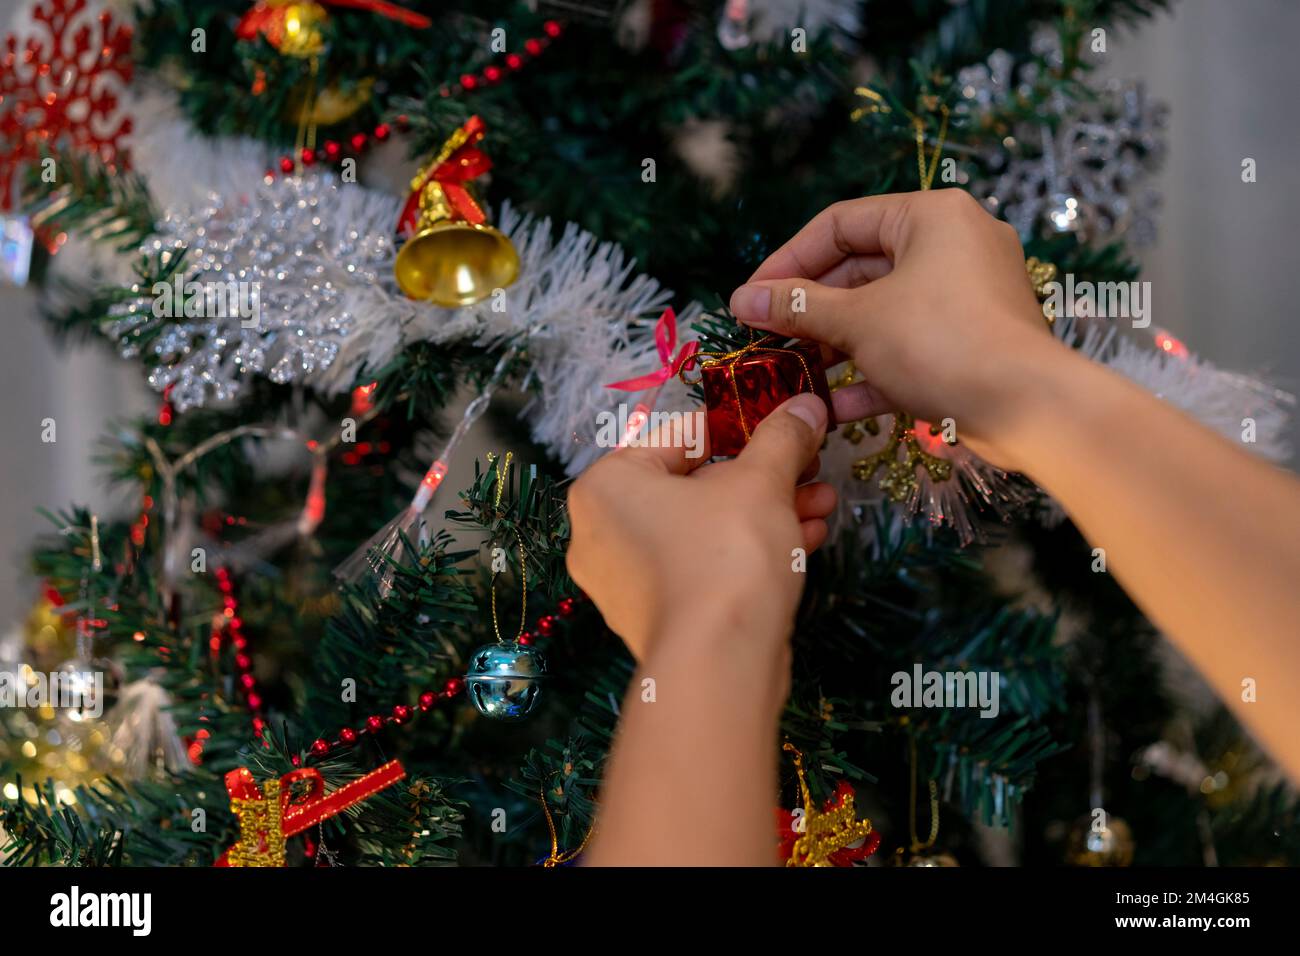 Bild: Dekorativer Weihnachtsbaum, Konzept für ein frohes neues Jahr und eine Weihnachtsfeier. Stockfoto